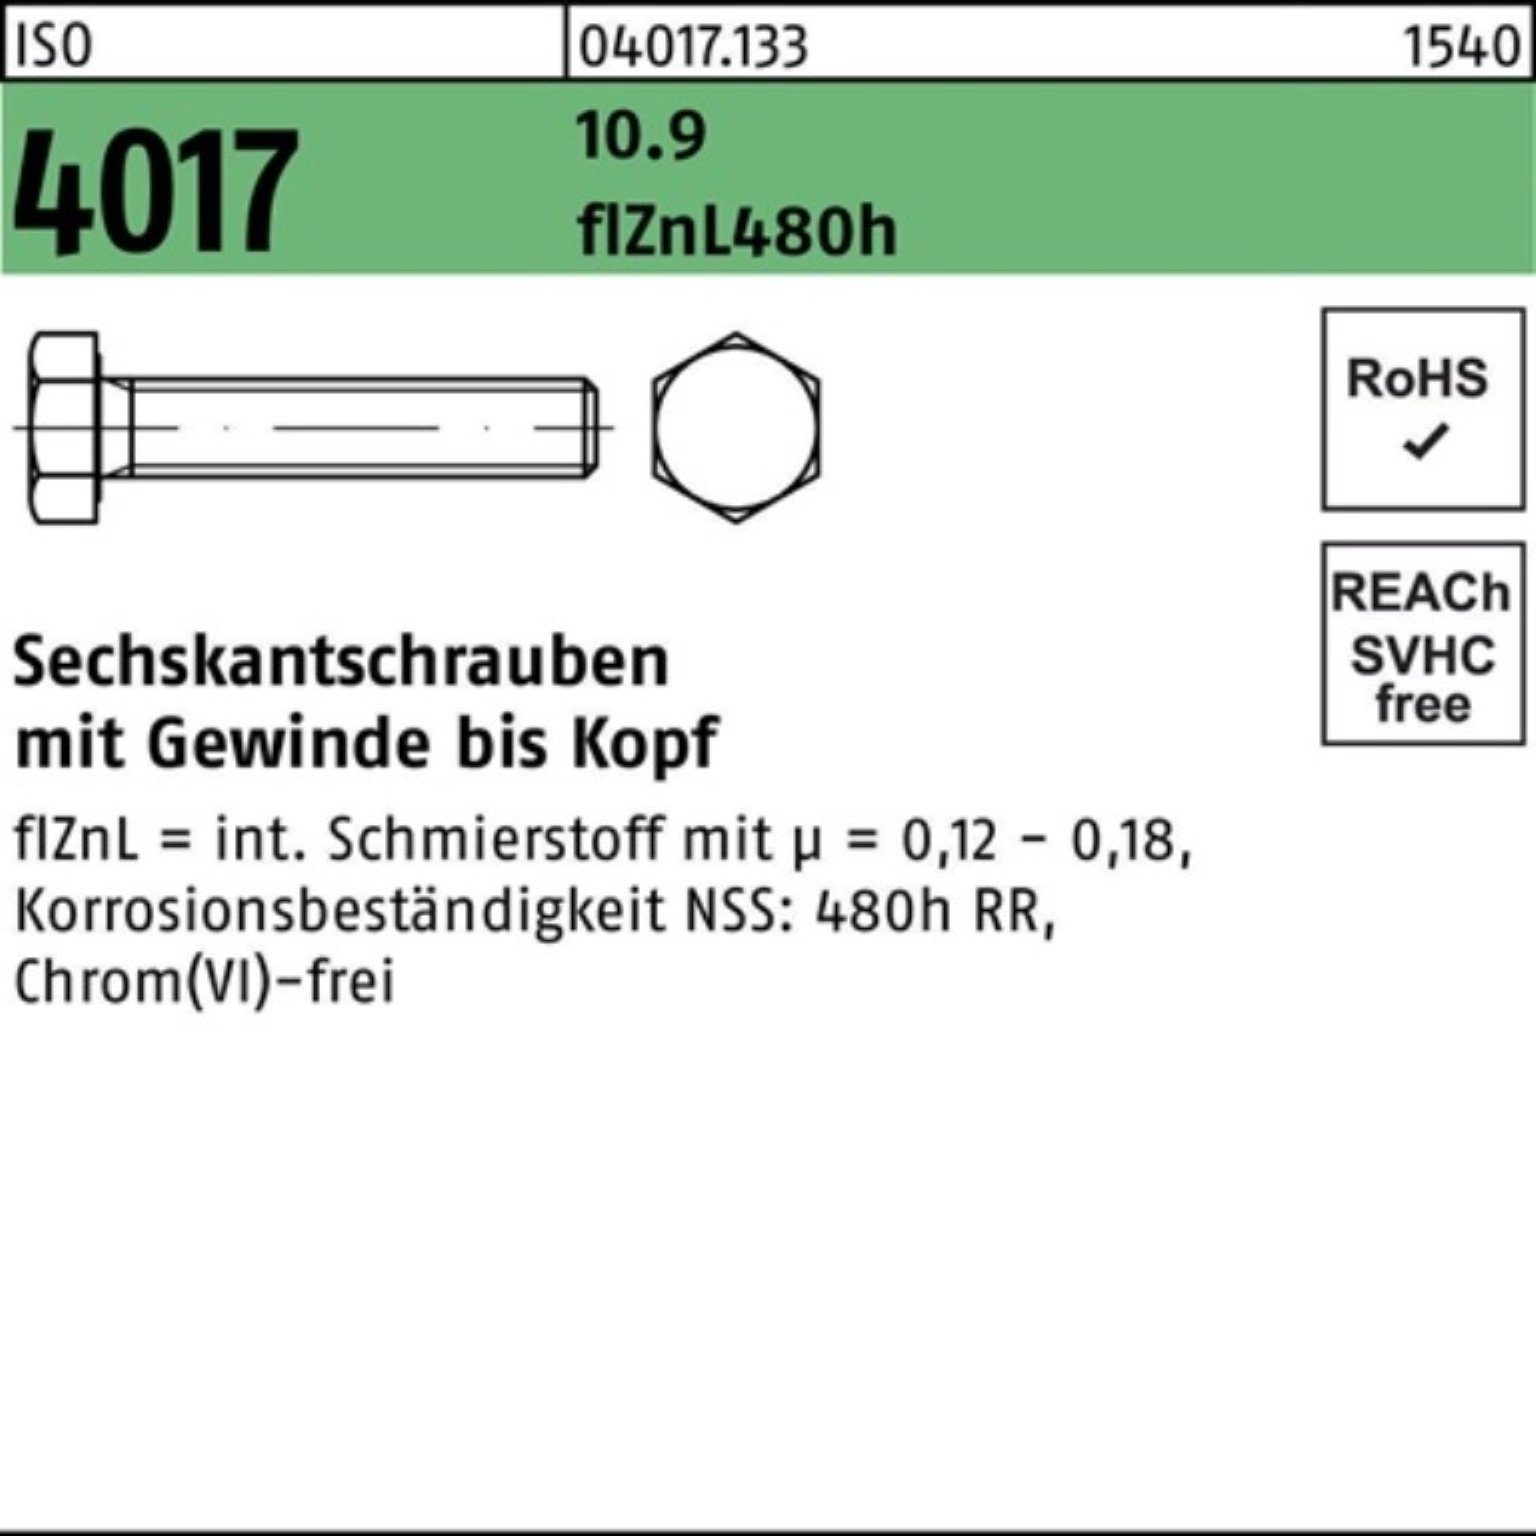 Bufab Sechskantschraube 10.9 VG 80 4017 5 M12x 100er ISO zinklamellenb. Pack Sechskantschraube